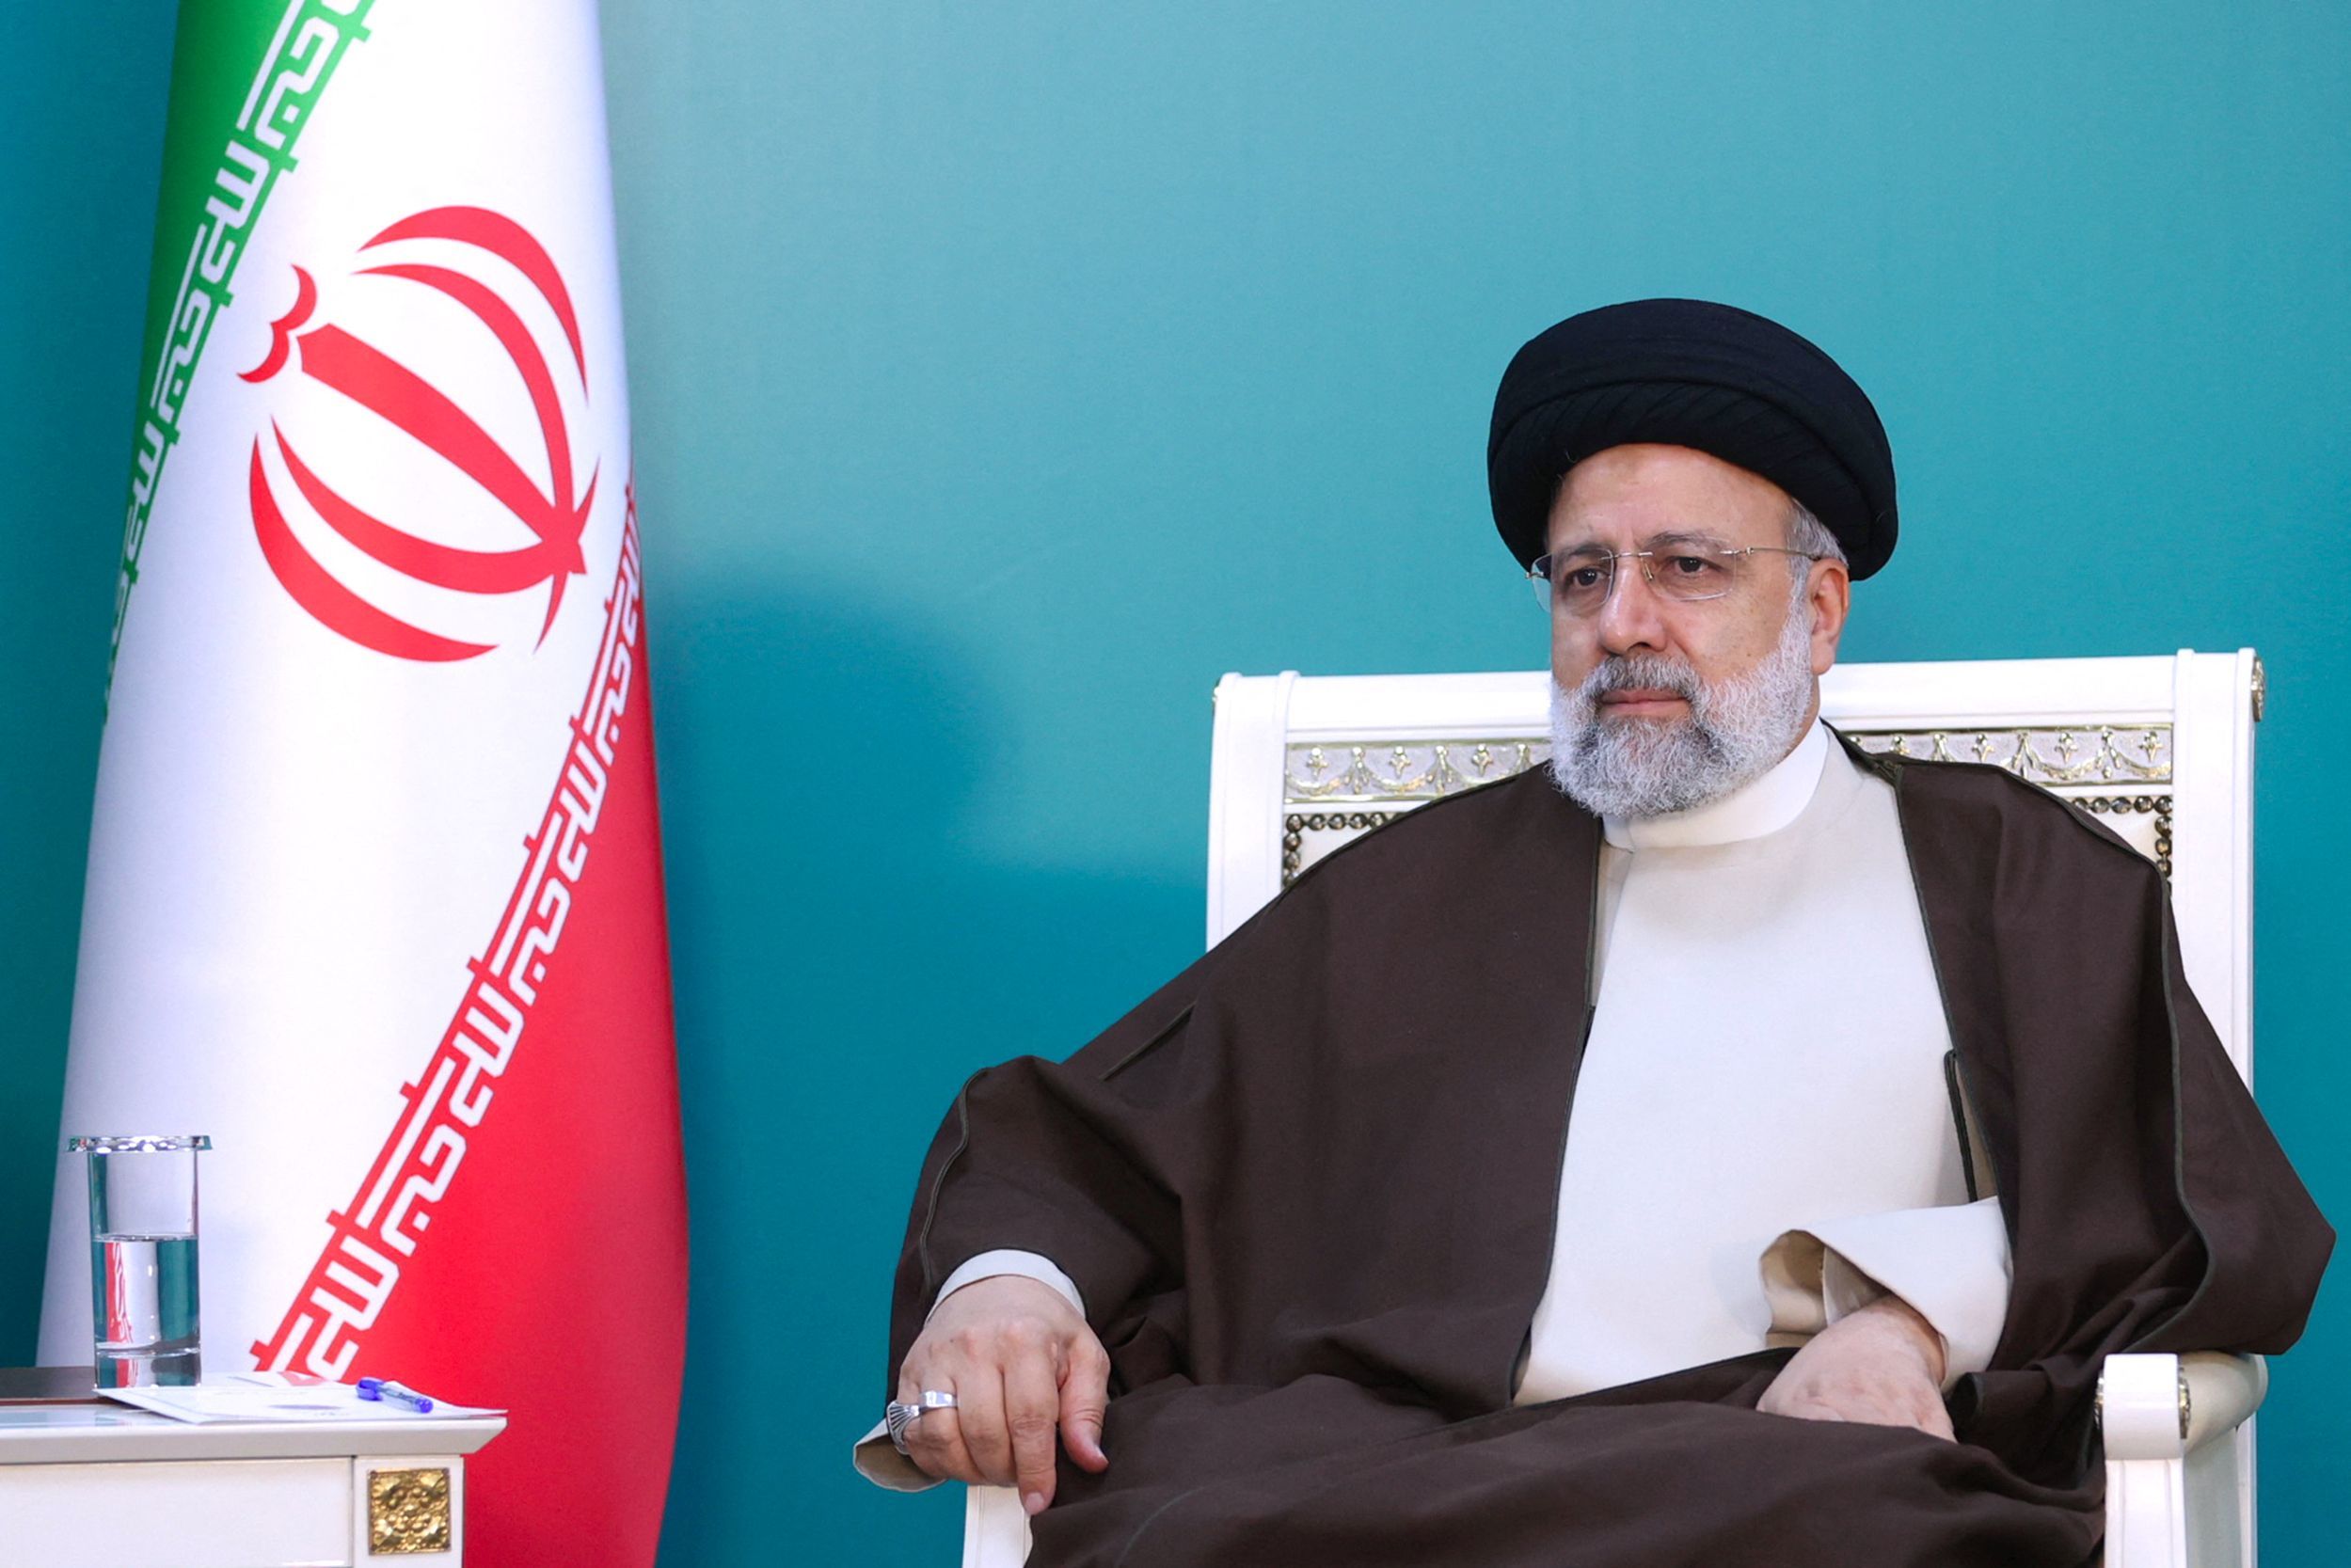 De dood van de Iraanse president Raisi voegt onzekerheid toe aan de explosieve mix van de regio